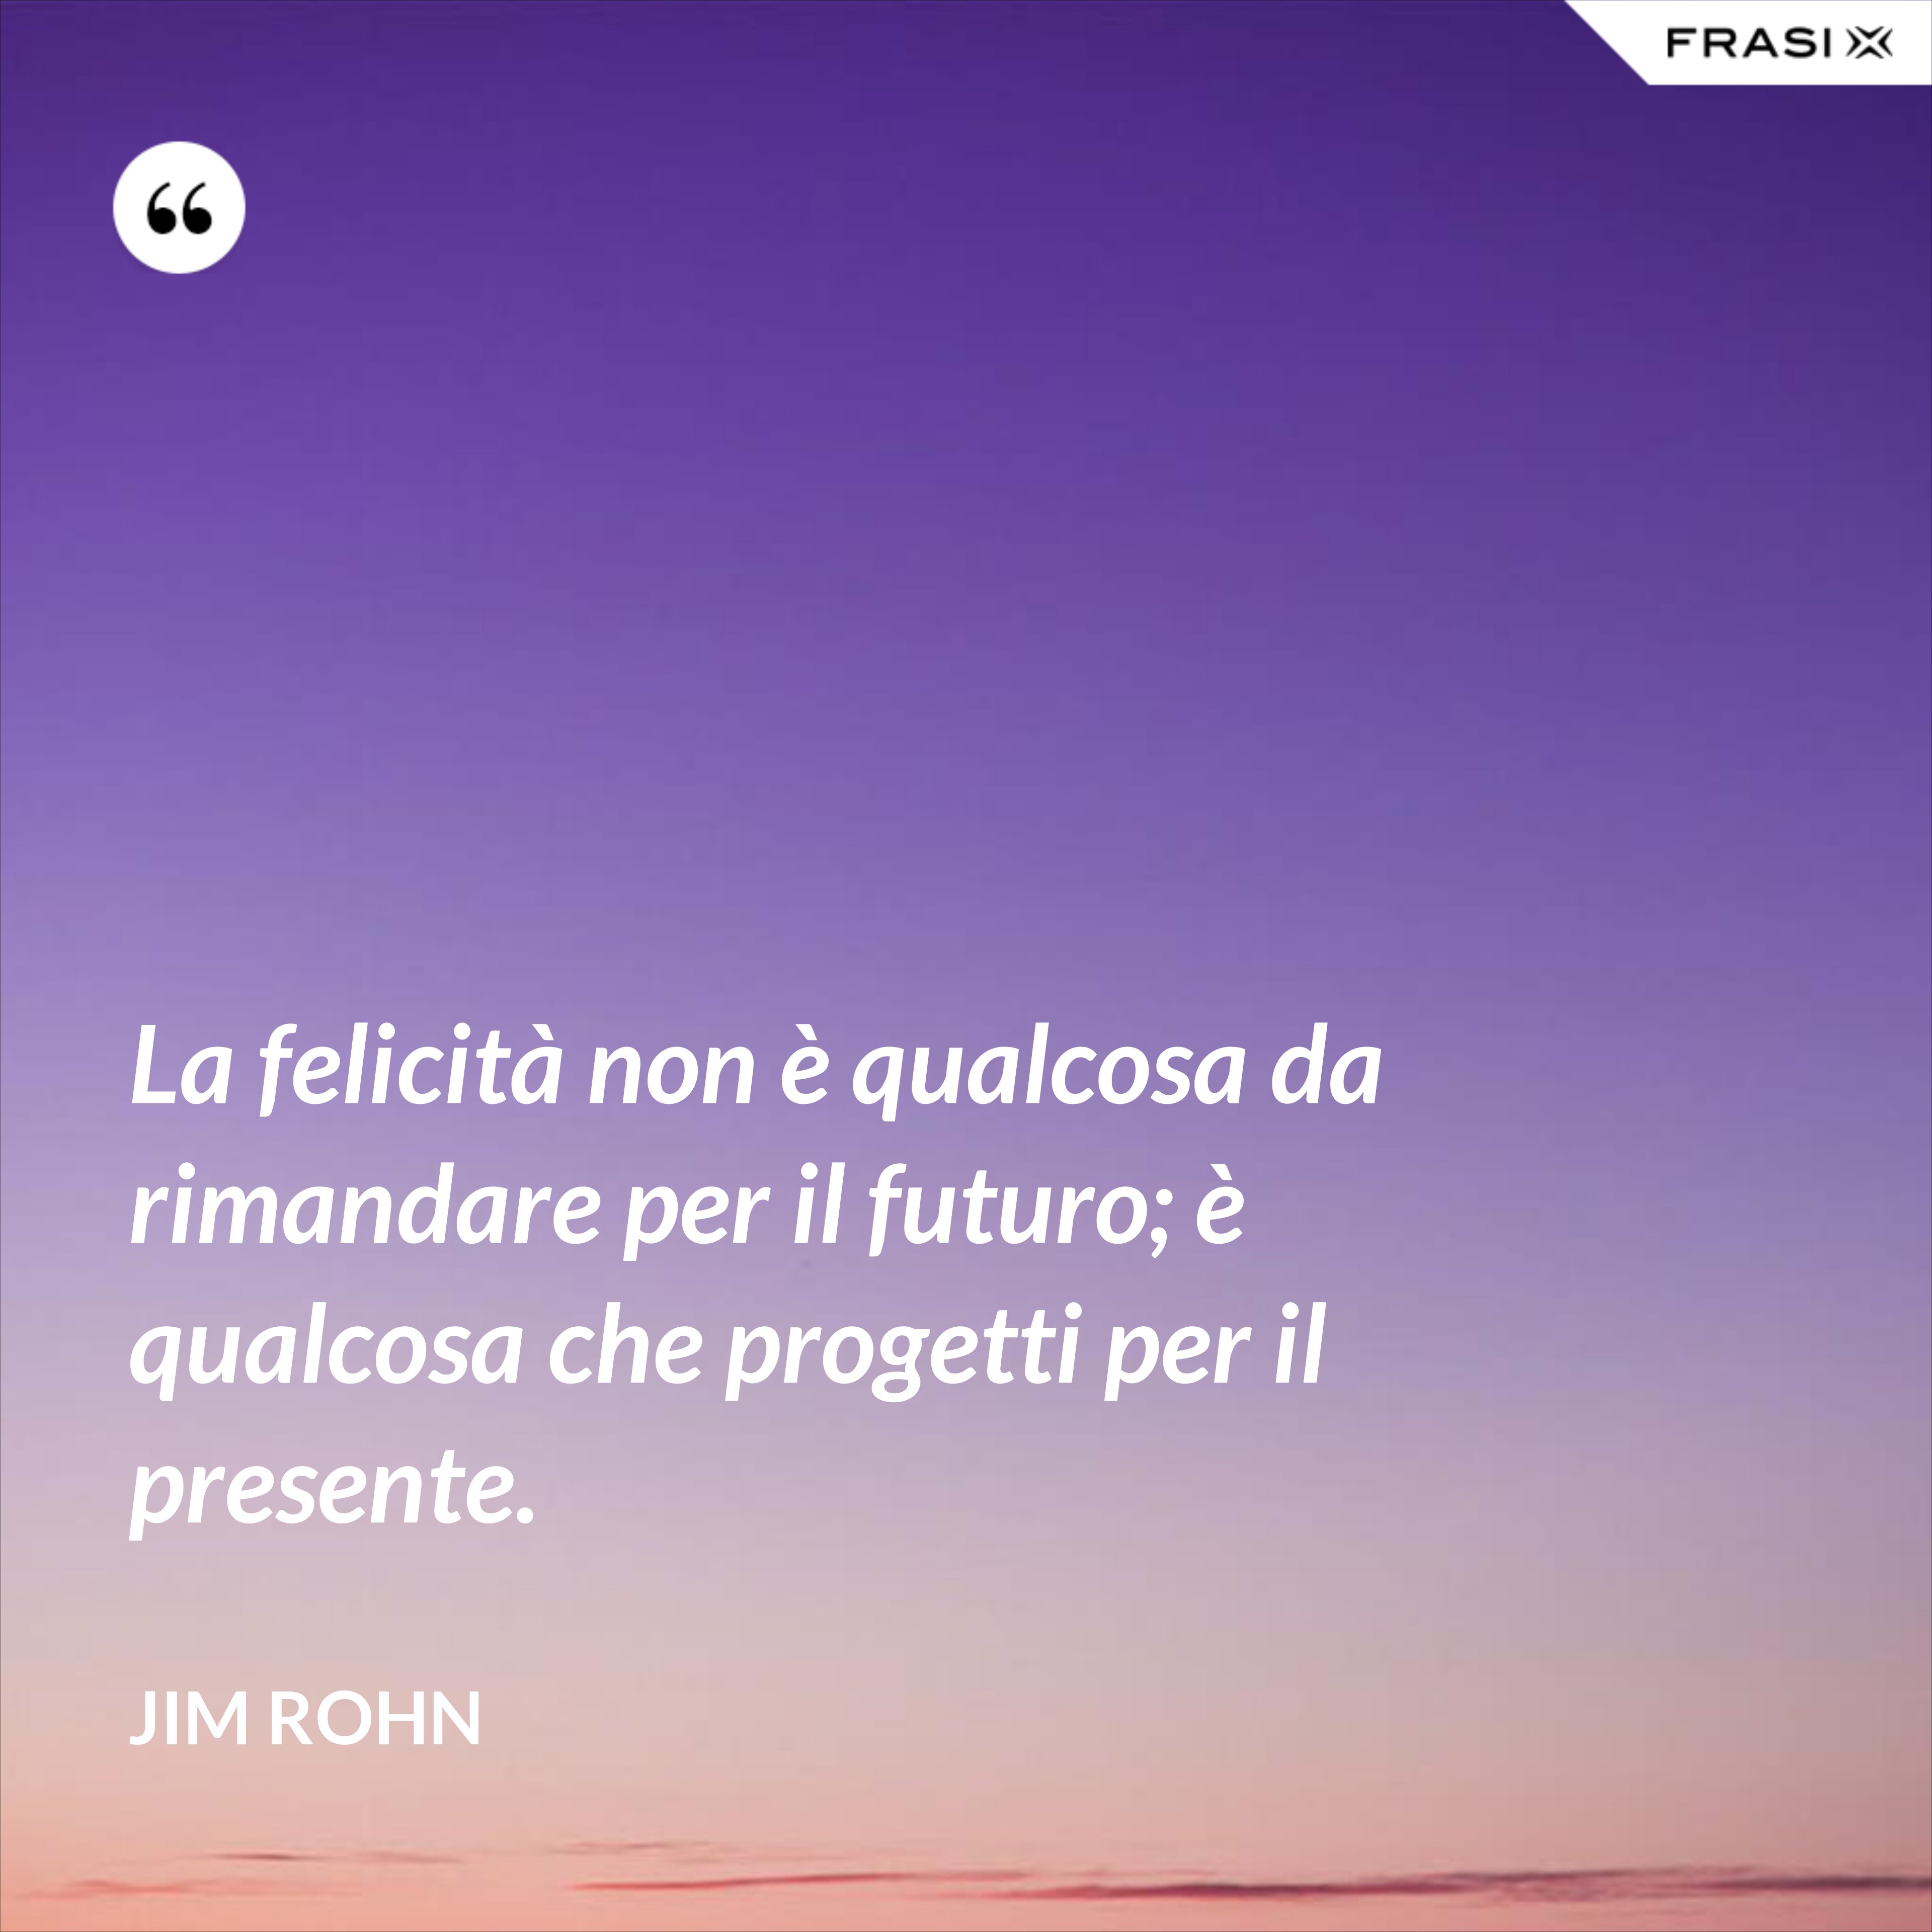 La felicità non è qualcosa da rimandare per il futuro; è qualcosa che progetti per il presente. - Jim Rohn